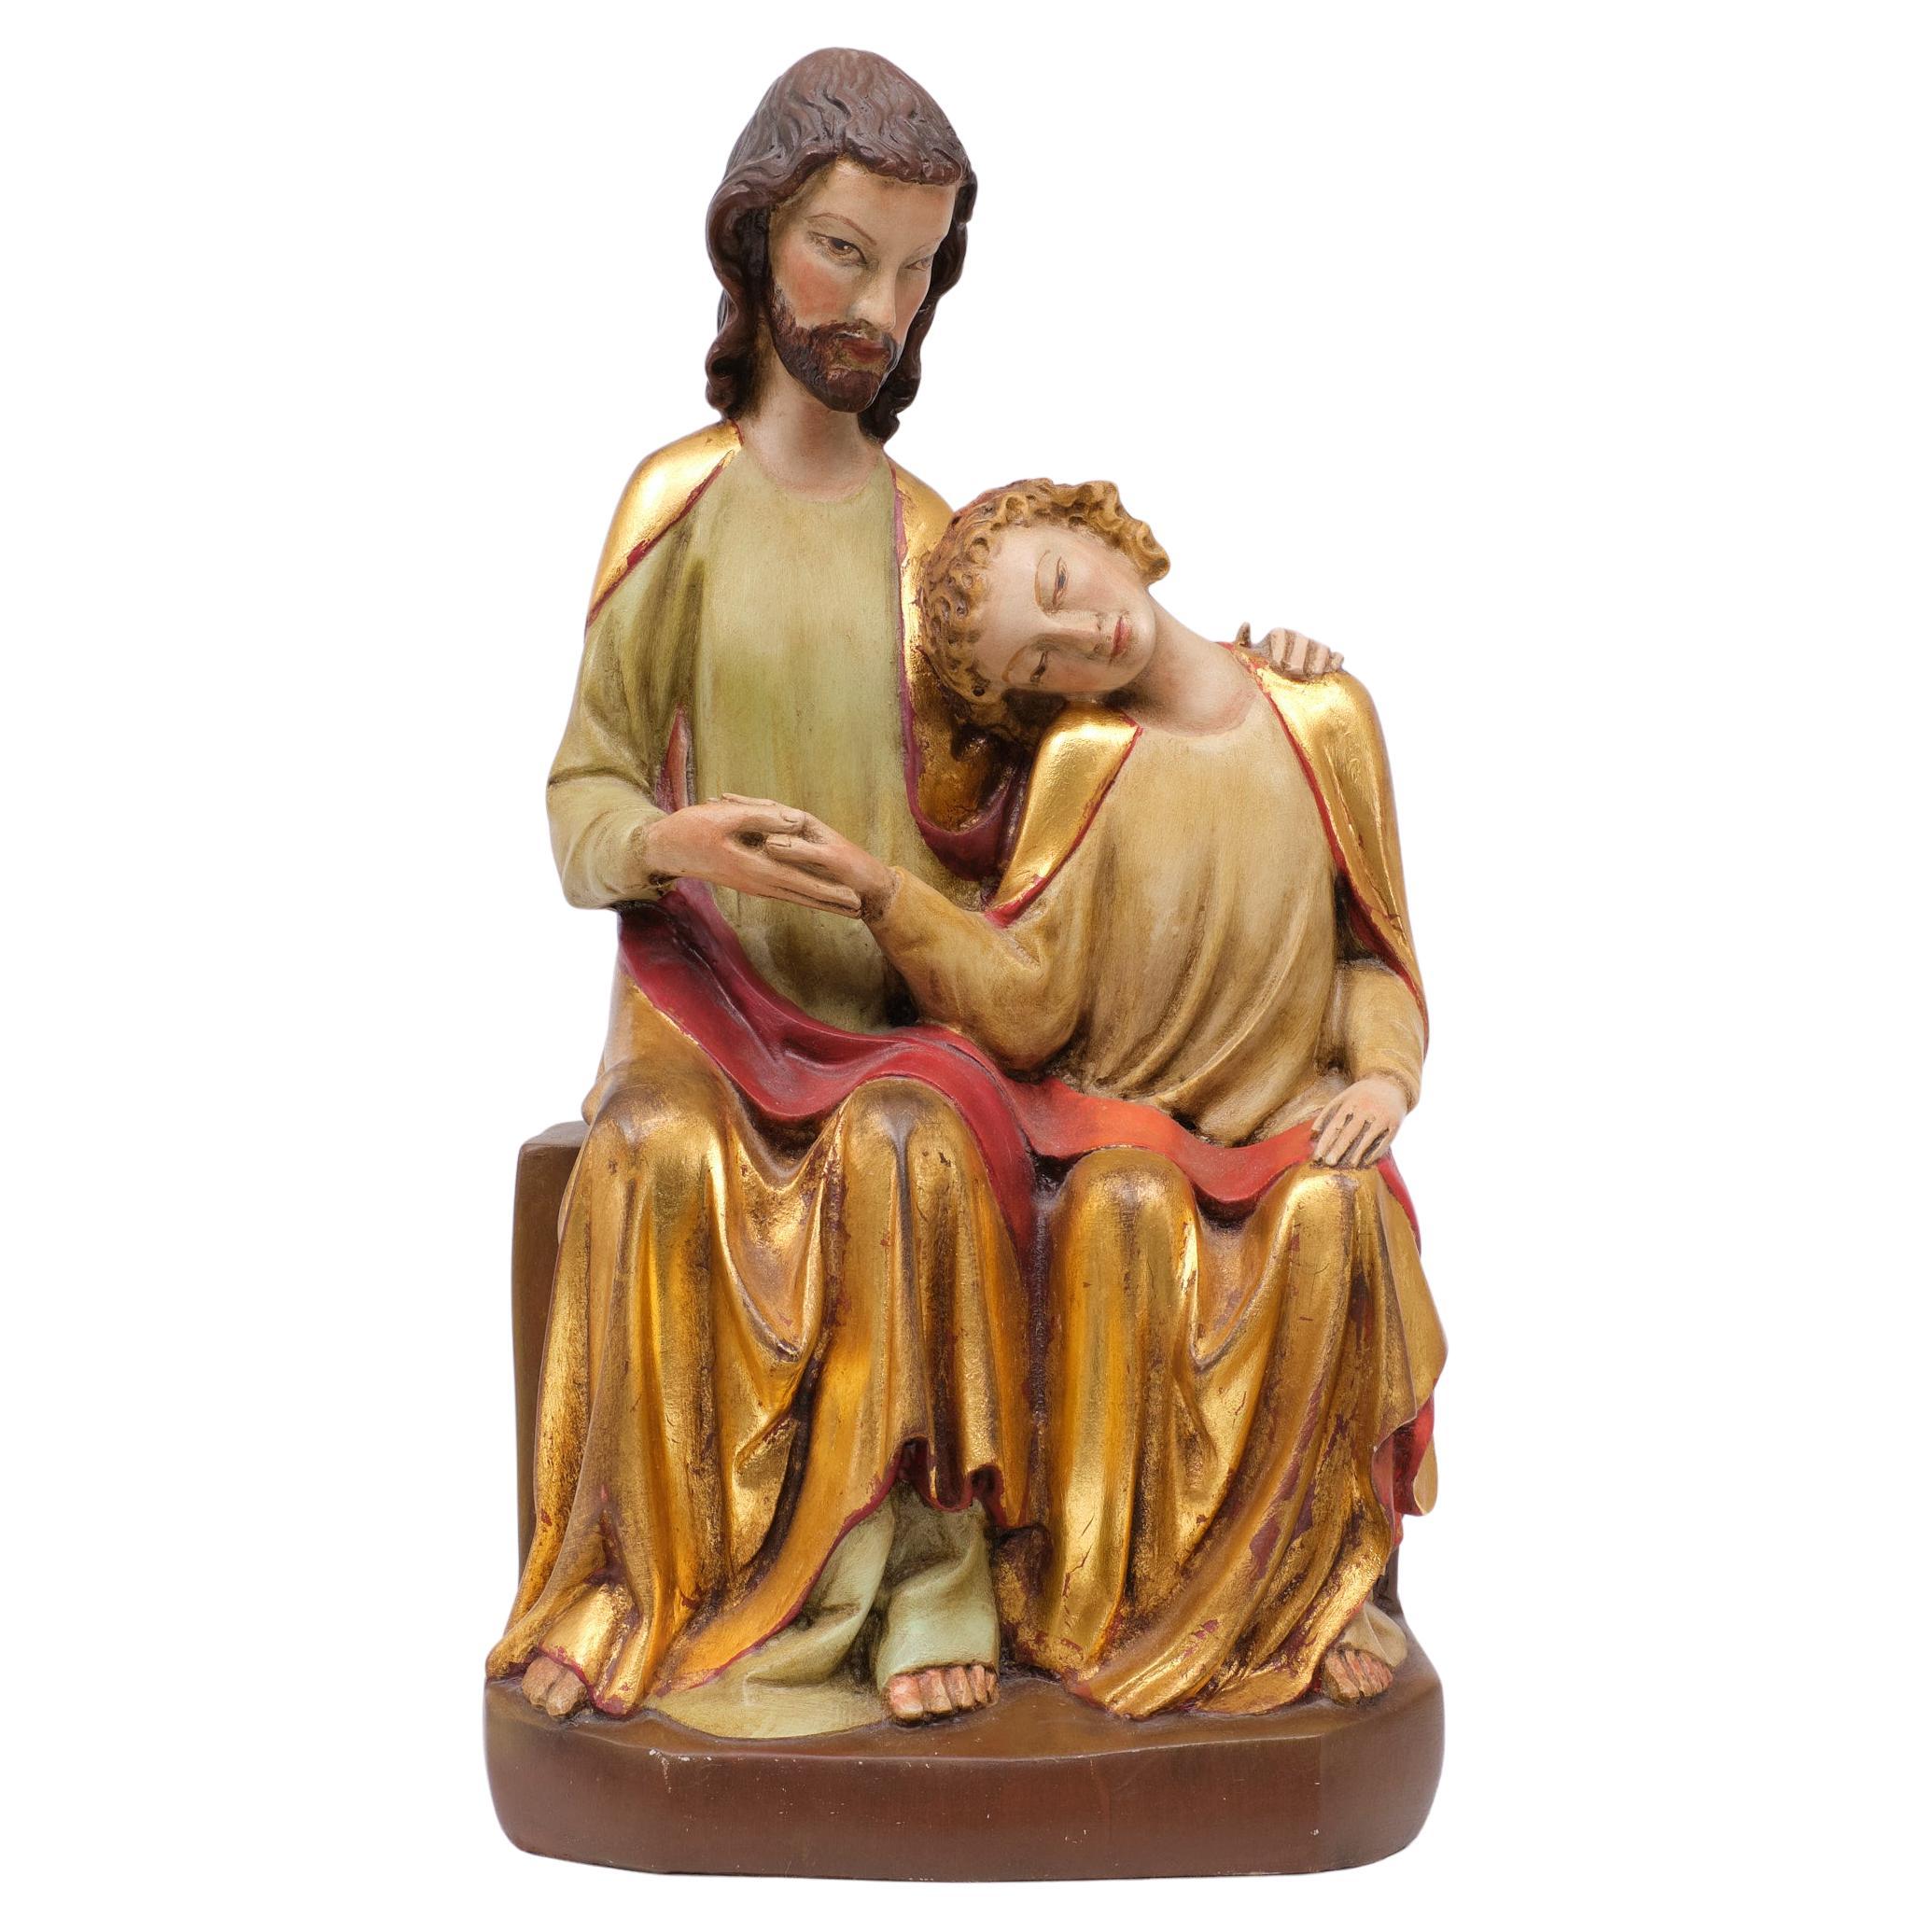 Sculpture de Jean sur la poitrine du Christ   Reproduction dans un musée 